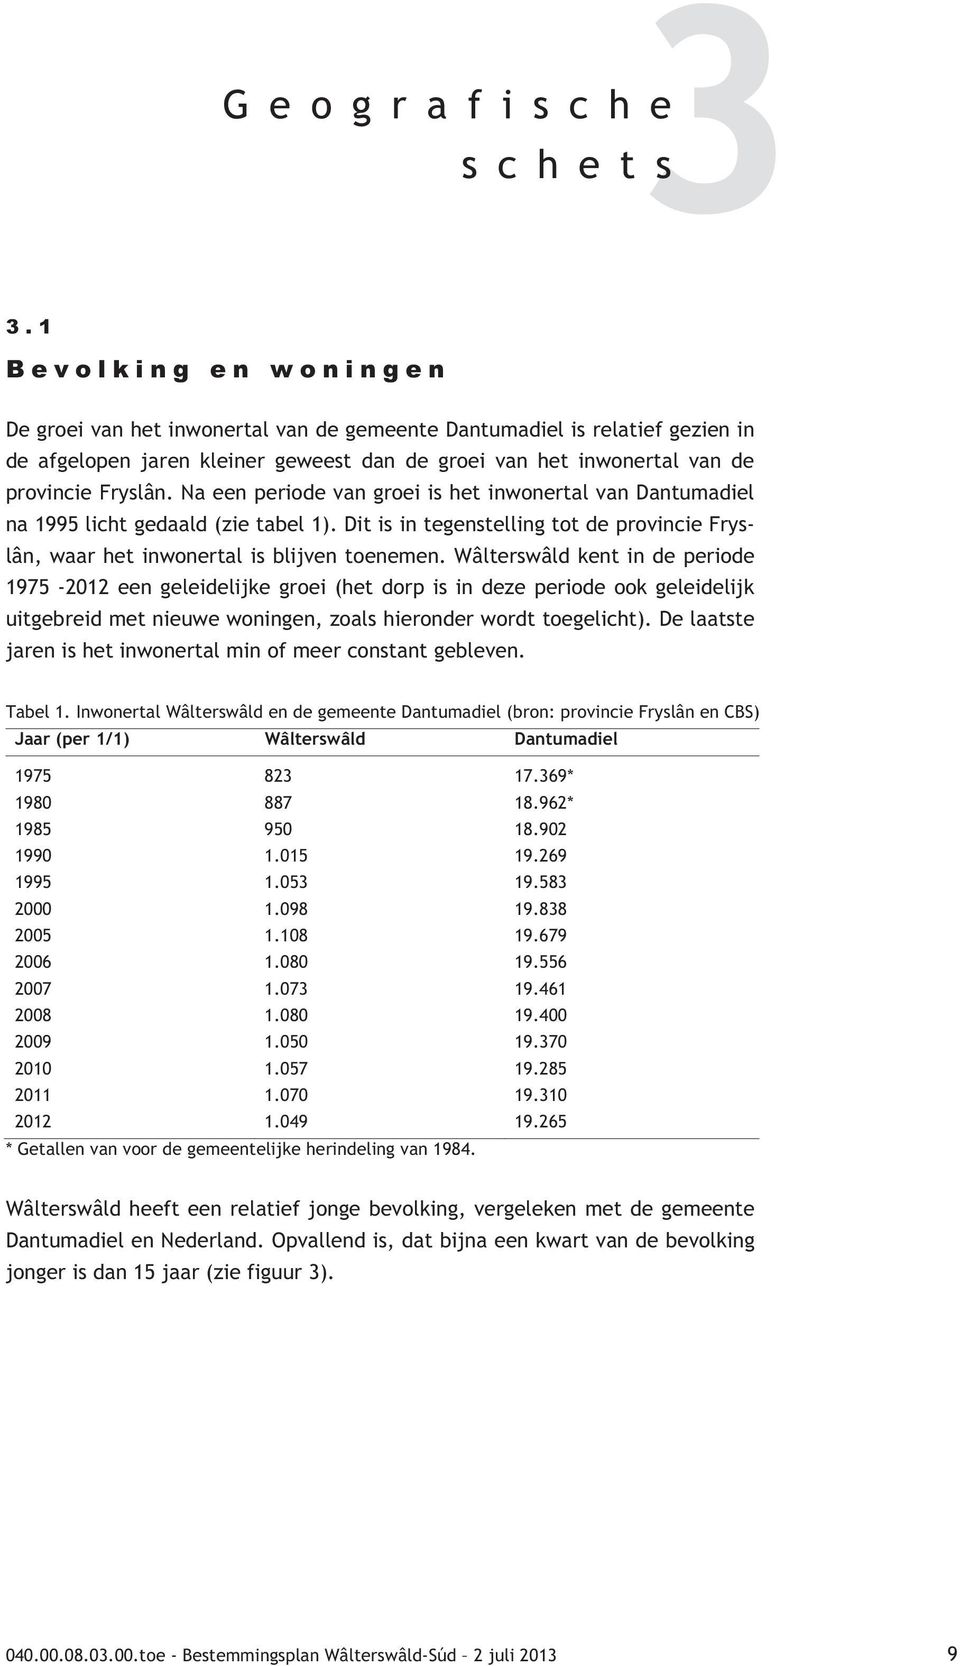 Na een periode van groei is het inwonertal van Dantumadiel na 1995 licht gedaald (zie tabel 1). Dit is in tegenstelling tot de provincie Fryslân, waar het inwonertal is blijven toenemen.